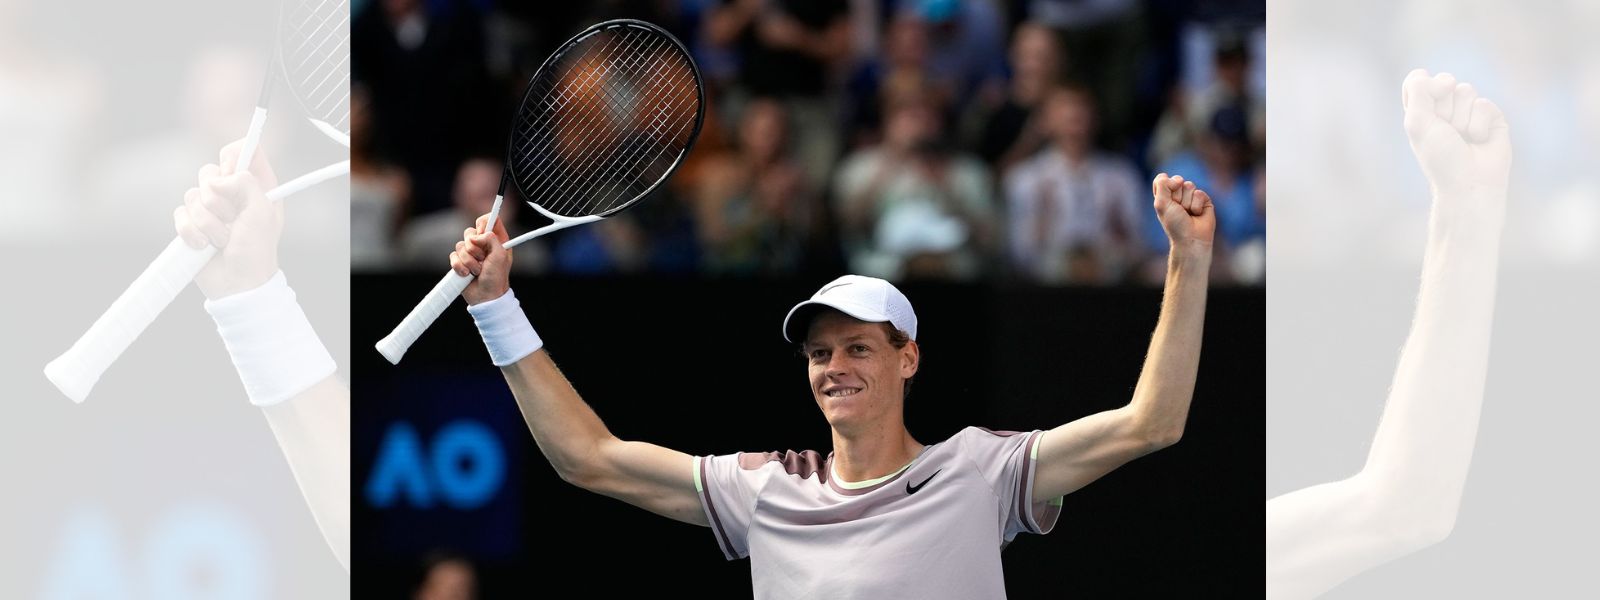 Italian Jannik Sinner beats Daniil Medvedev in the Australian Open final to win his first Grand Slam title